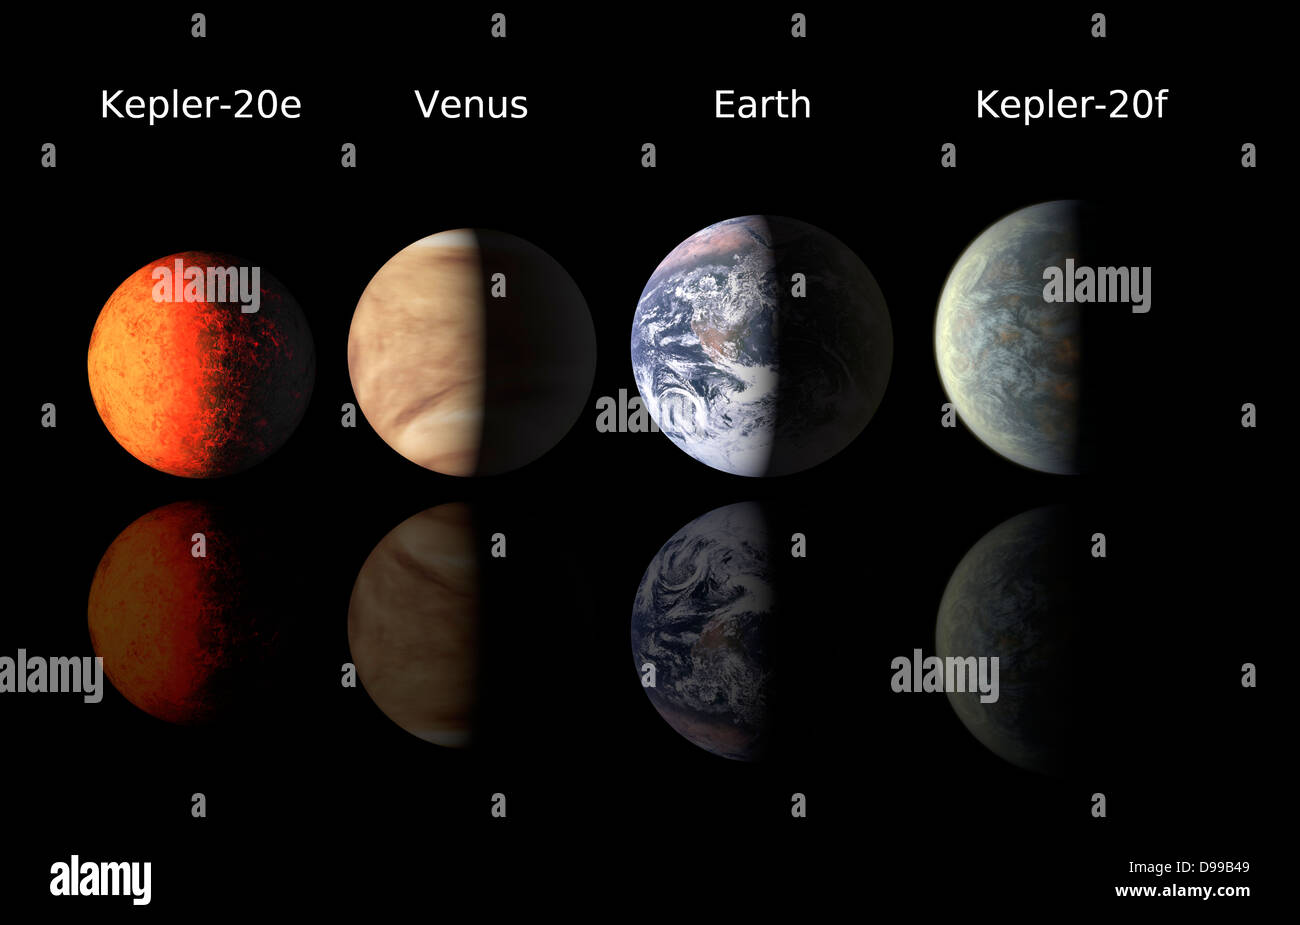 Dieses Diagramm vergleicht die erste Erde - Größe Planeten um eine Sonne gefunden - wie Sterne und Planeten in unserem Sonnensystem, die Erde und die Venus. Die NASA-Mission Kepler entdeckte die neuentdeckten Planeten, genannt Kepler-20e und Kepler-20 w. Stockfoto